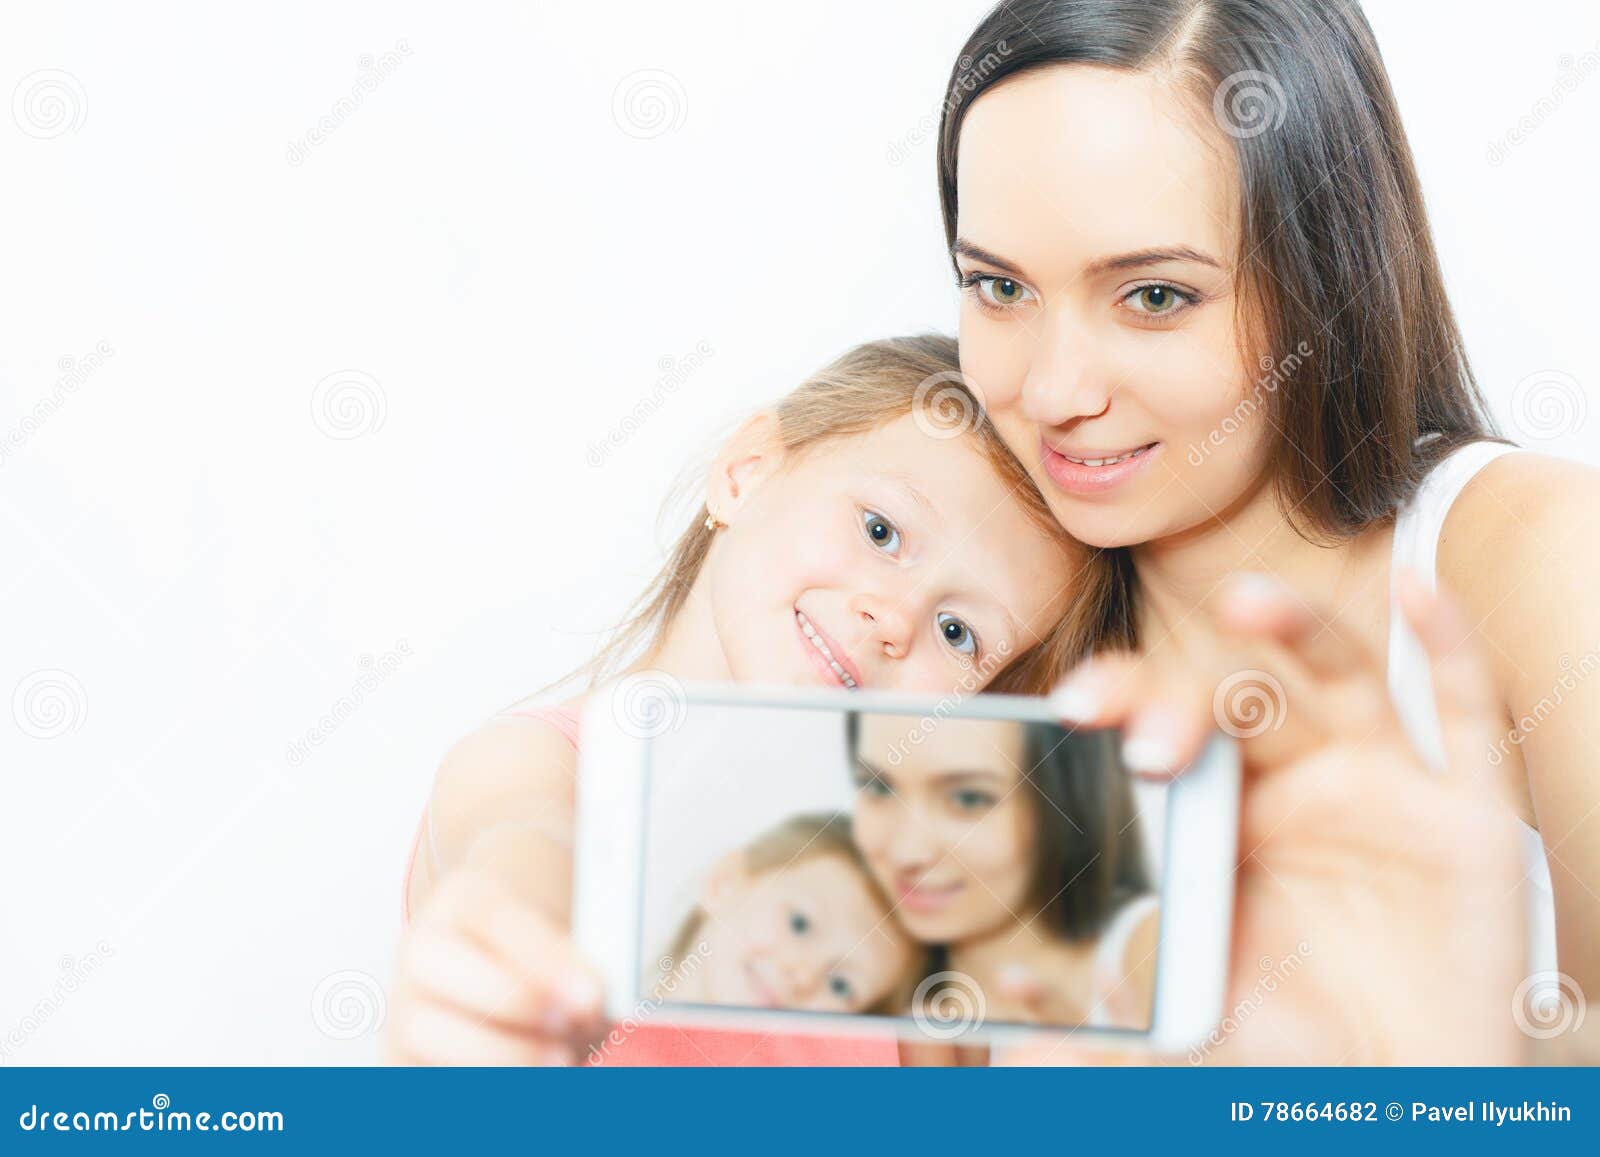 galleries mom selfies with phone